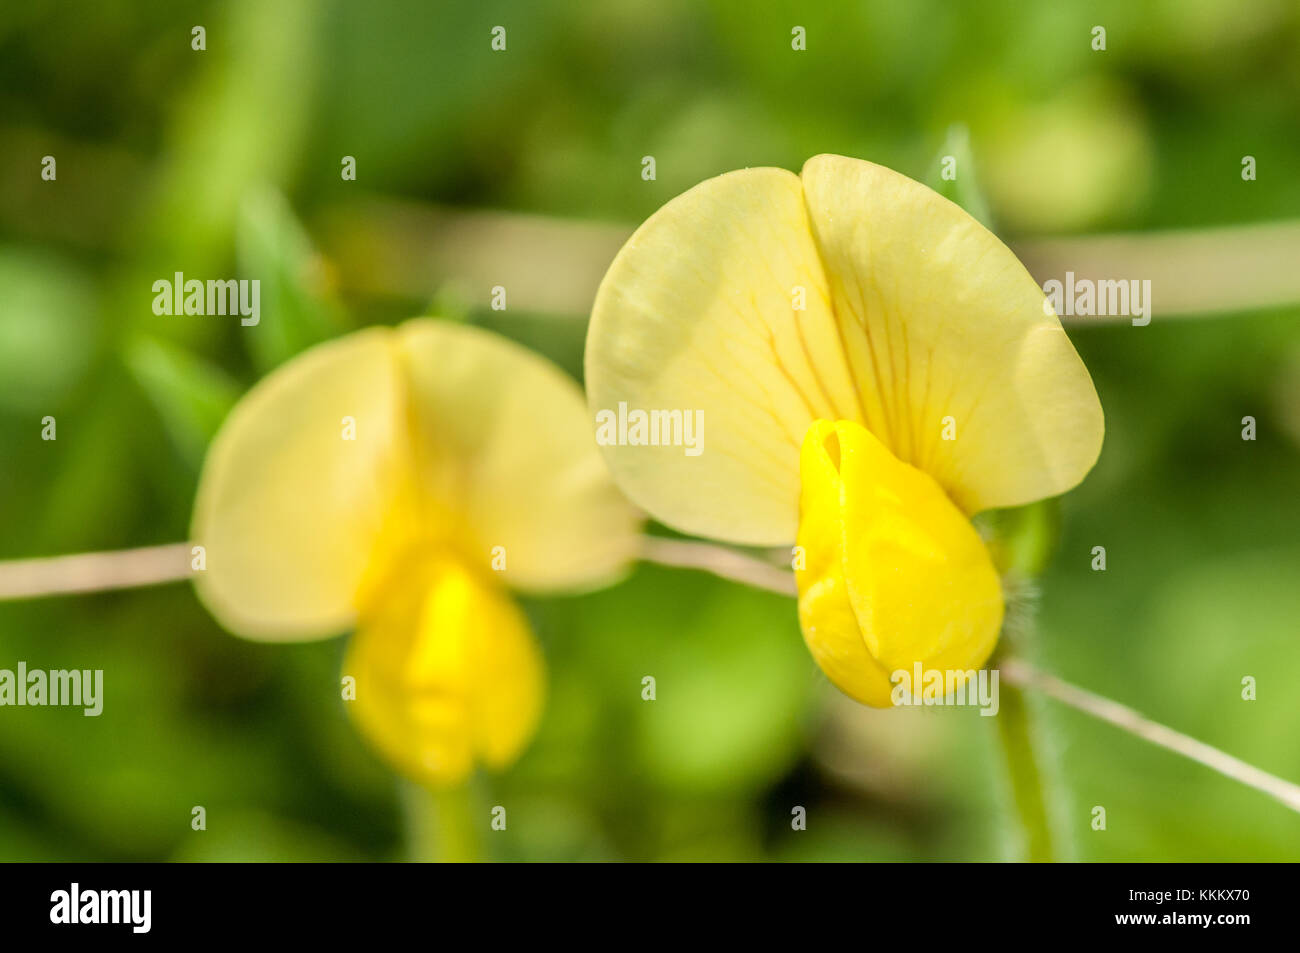 bean family yellow plant Stock Photo